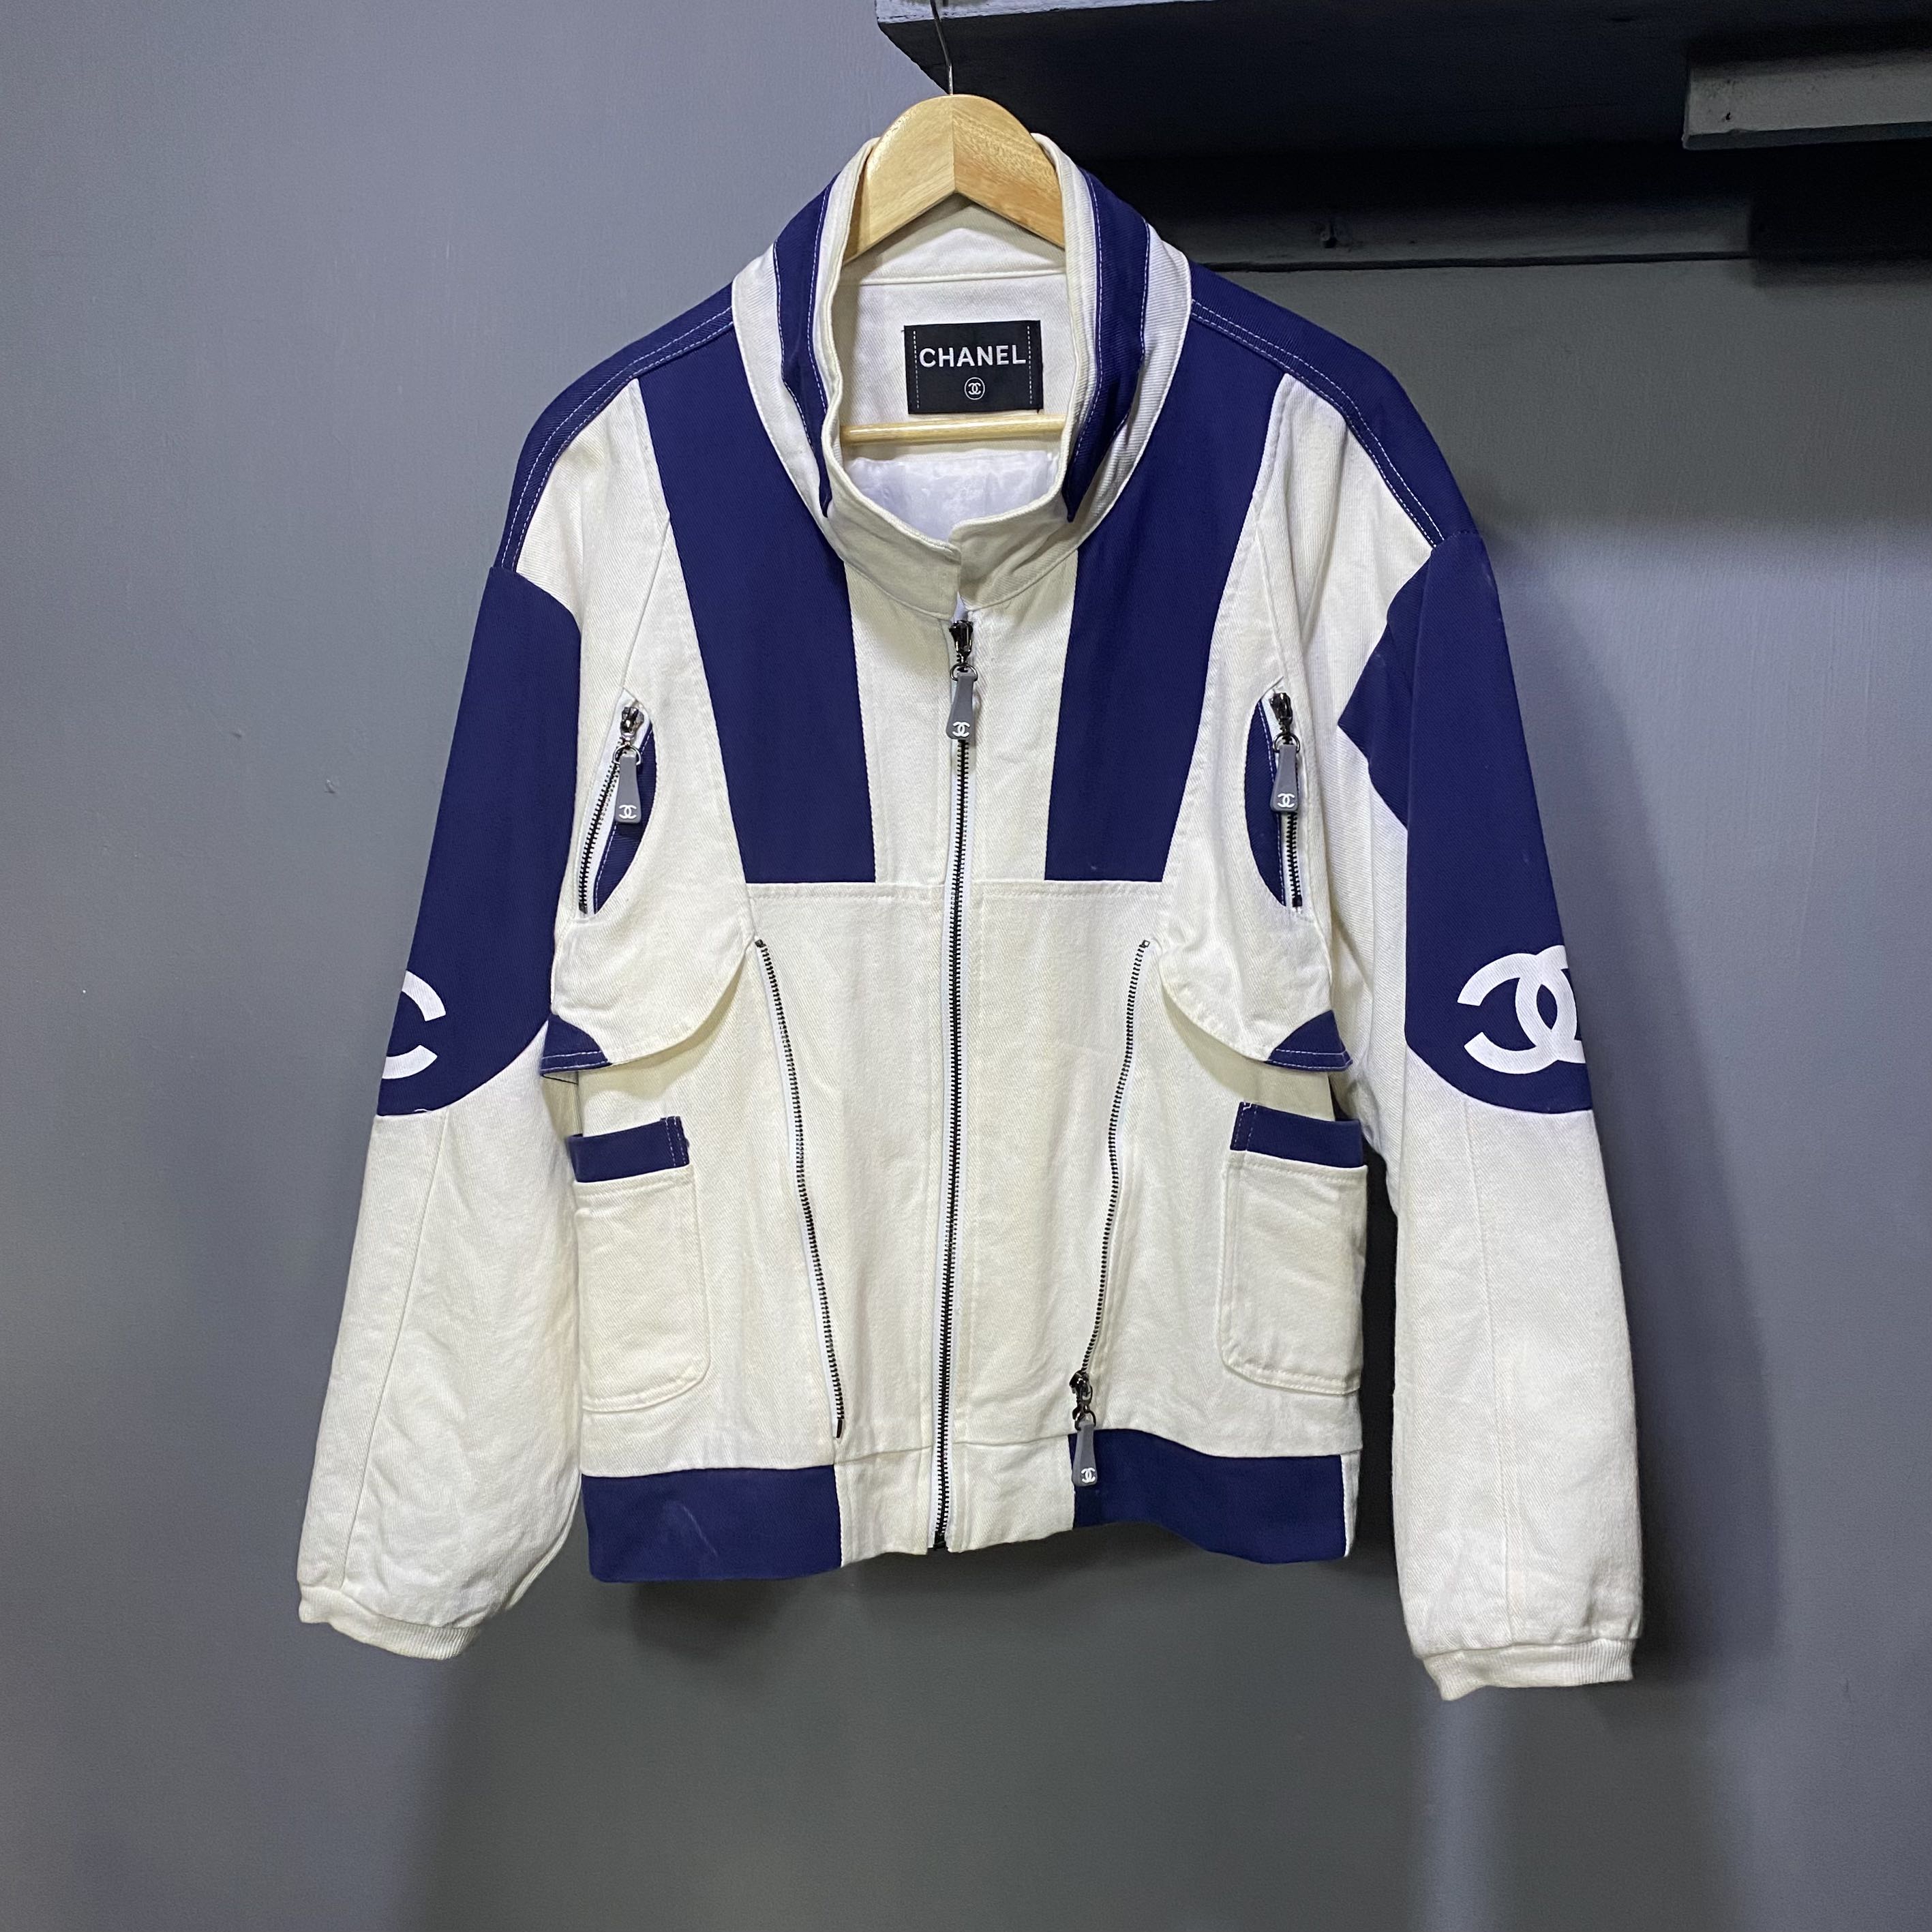 Chanel Sport Jacket  hkvintage